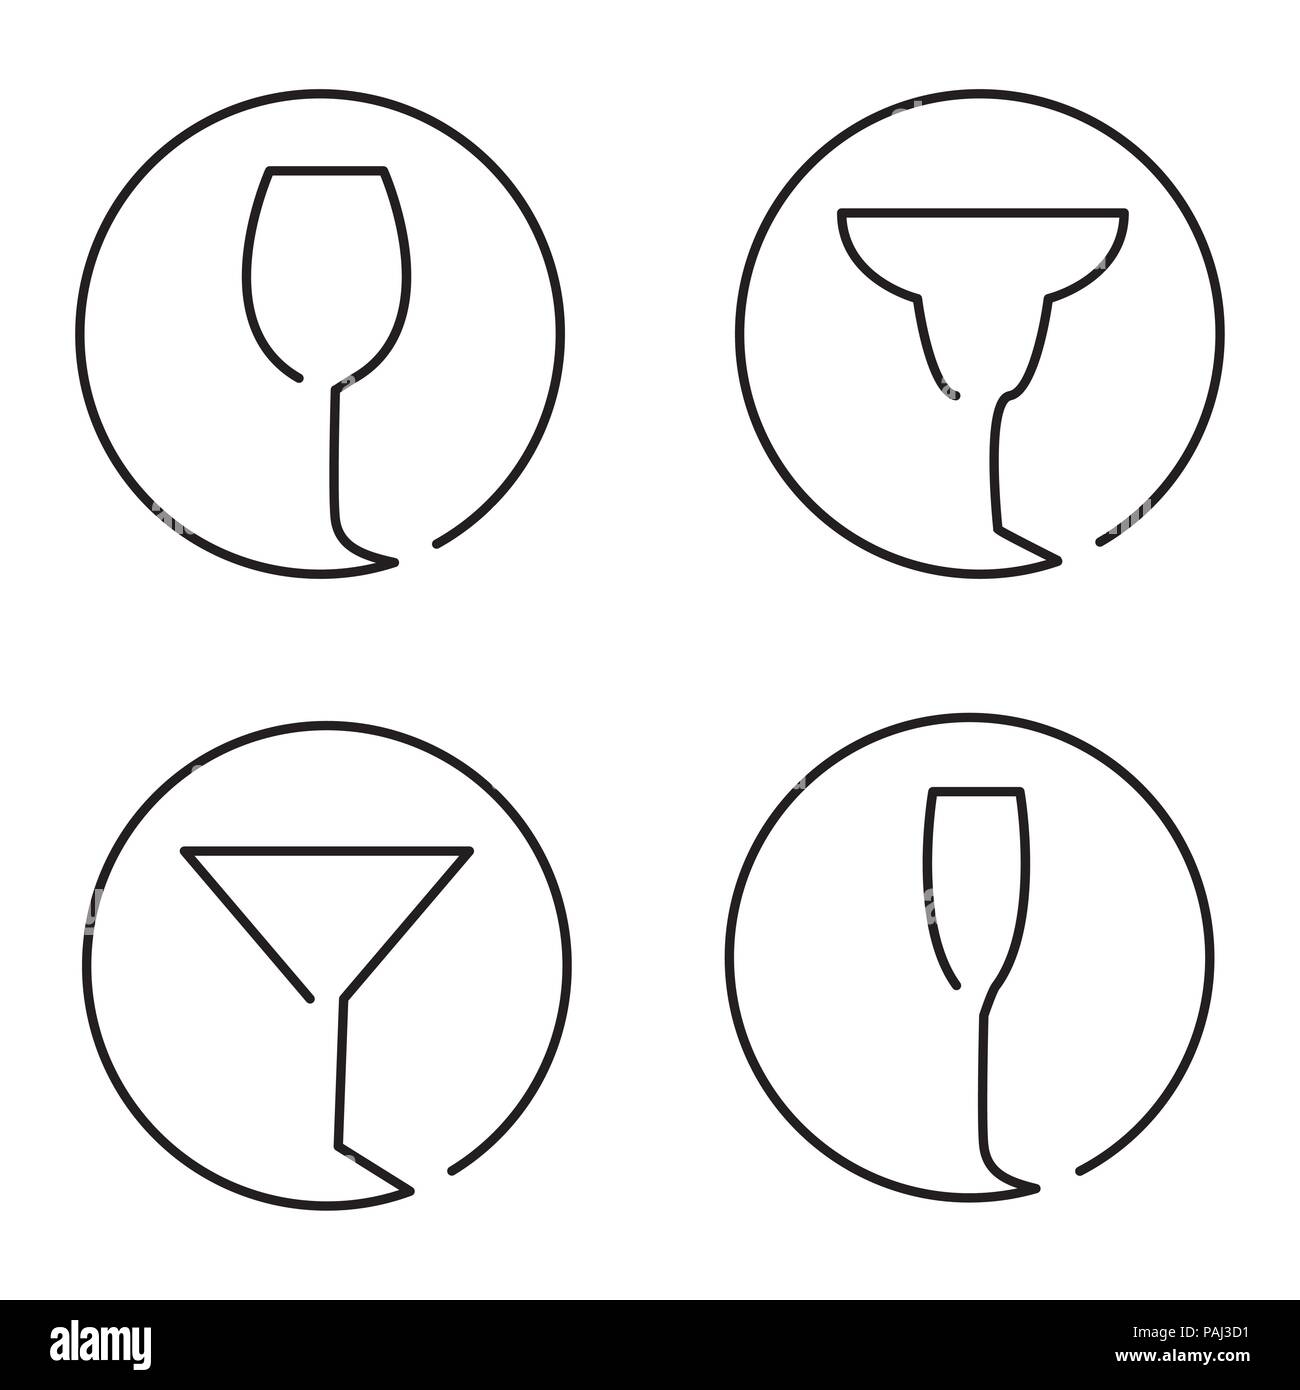 Ligne continue logo ensemble de verres différents, vin, cocktail margarita, Martini, Champaign Illustration de Vecteur